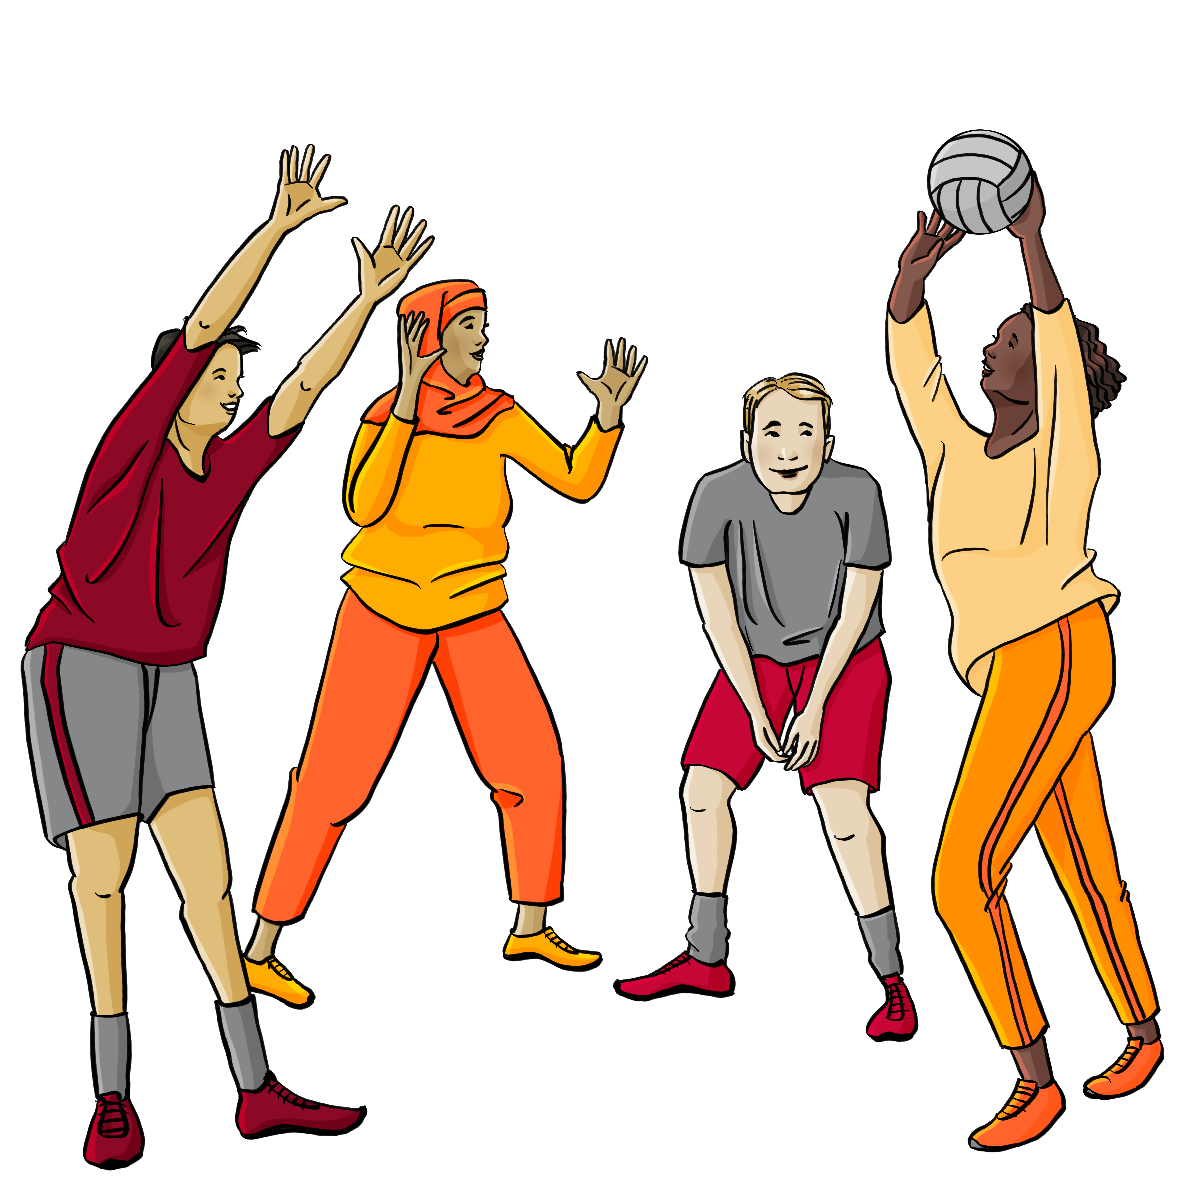 Menschen mit verschiedenen Hautfarben spielen zusammen Volleyball. Sie tragen Sportkleidung.